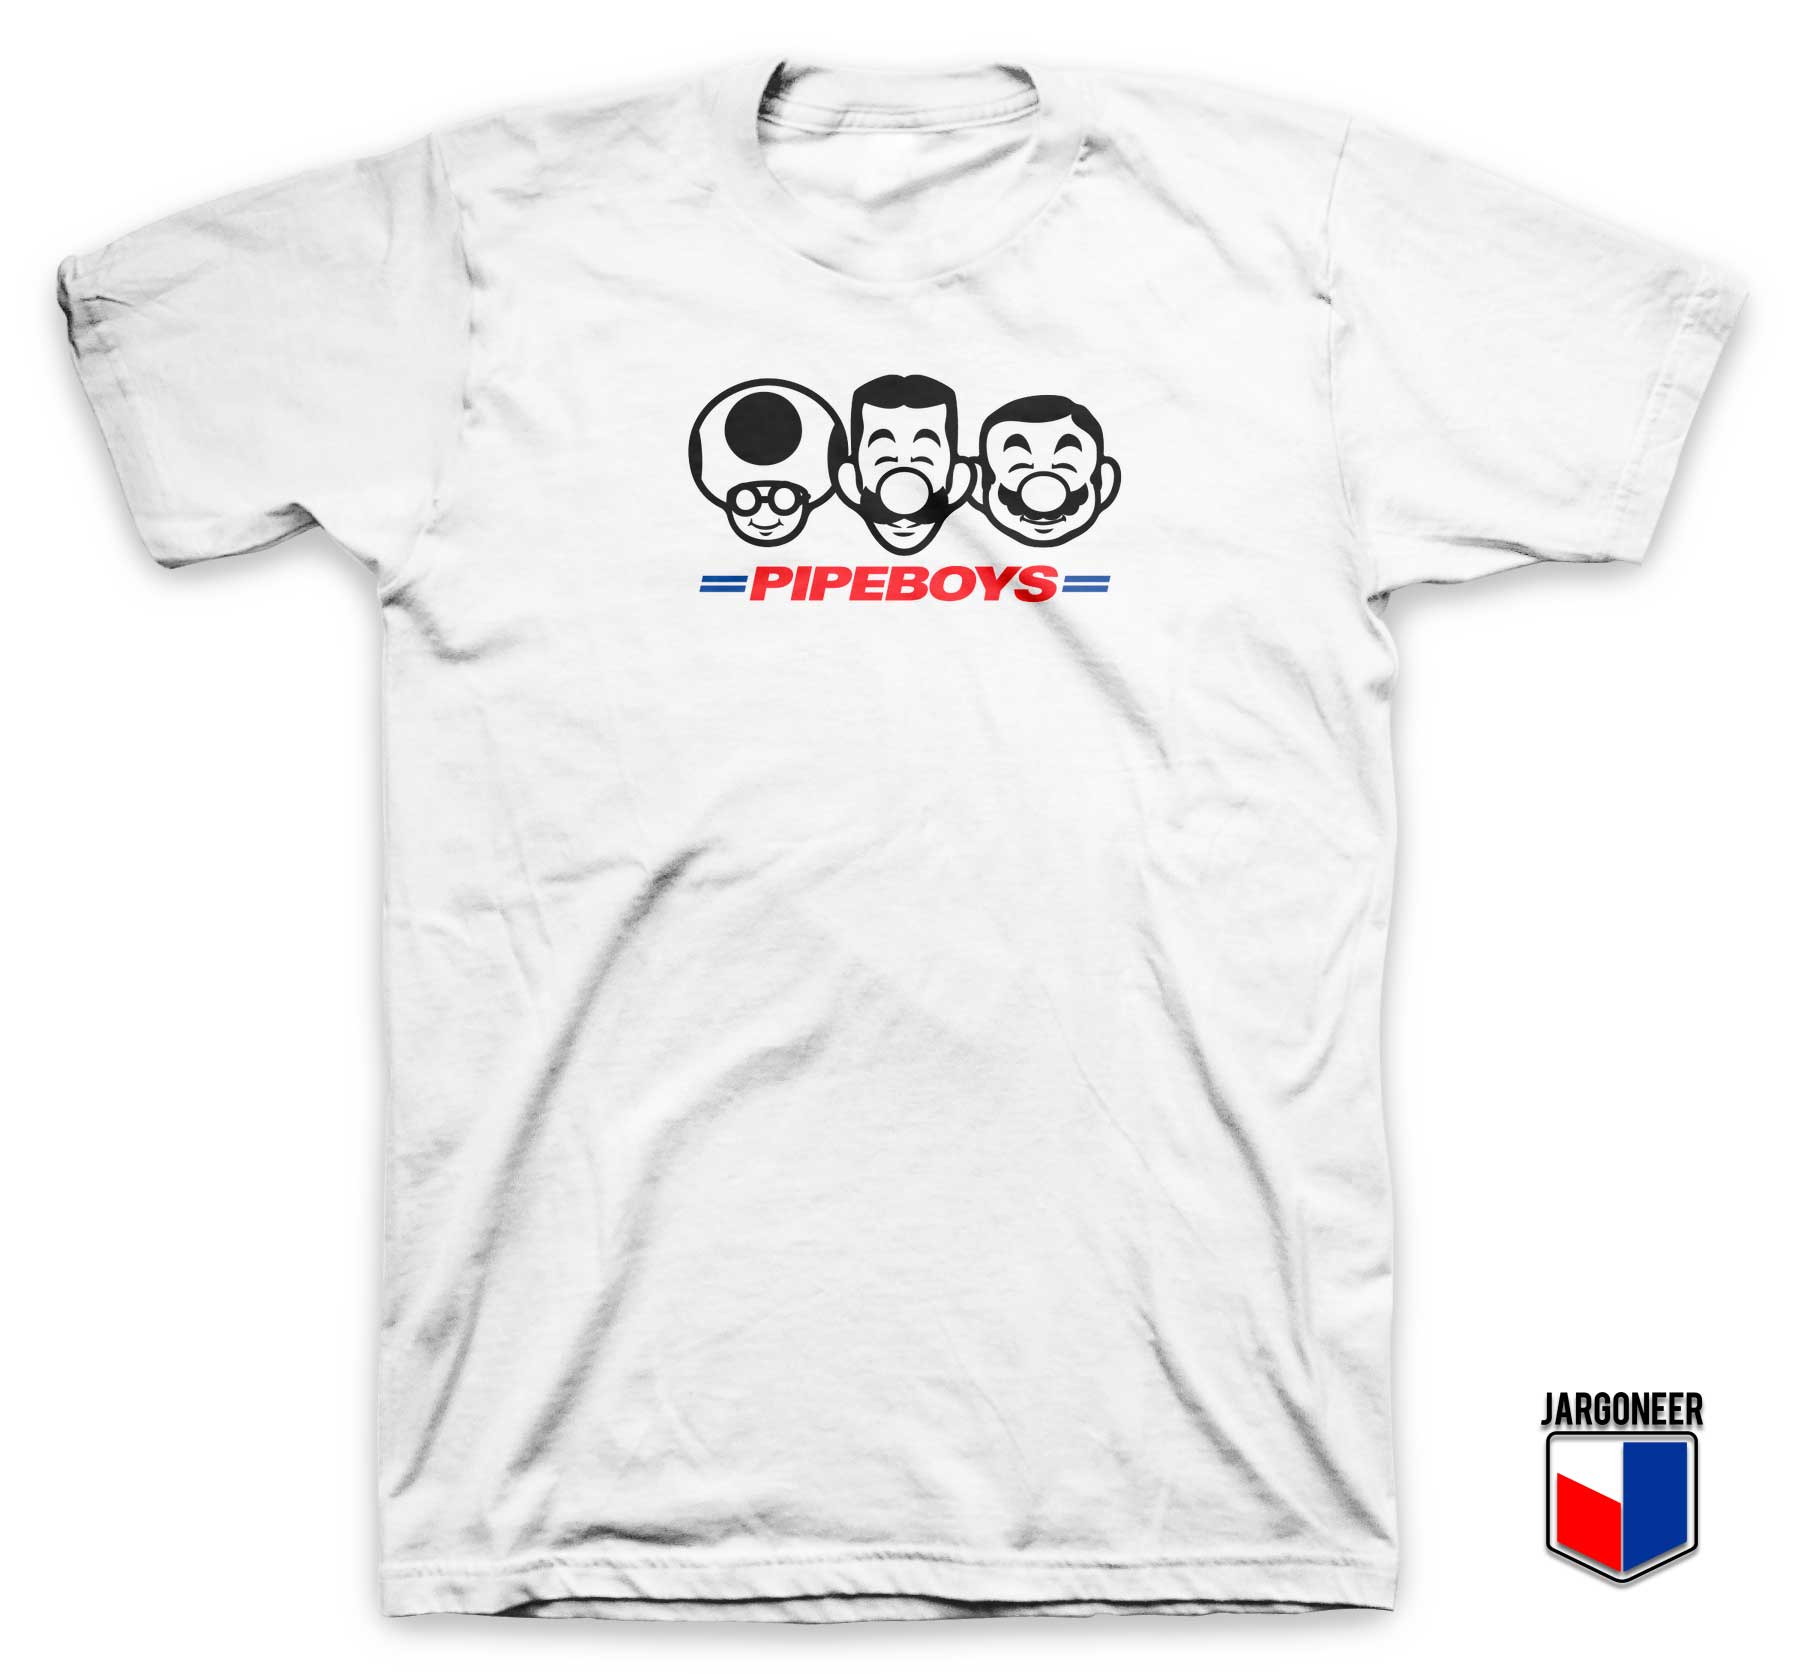 Pipe Boys Squad T Shirt - Shop Unique Graphic Cool Shirt Designs